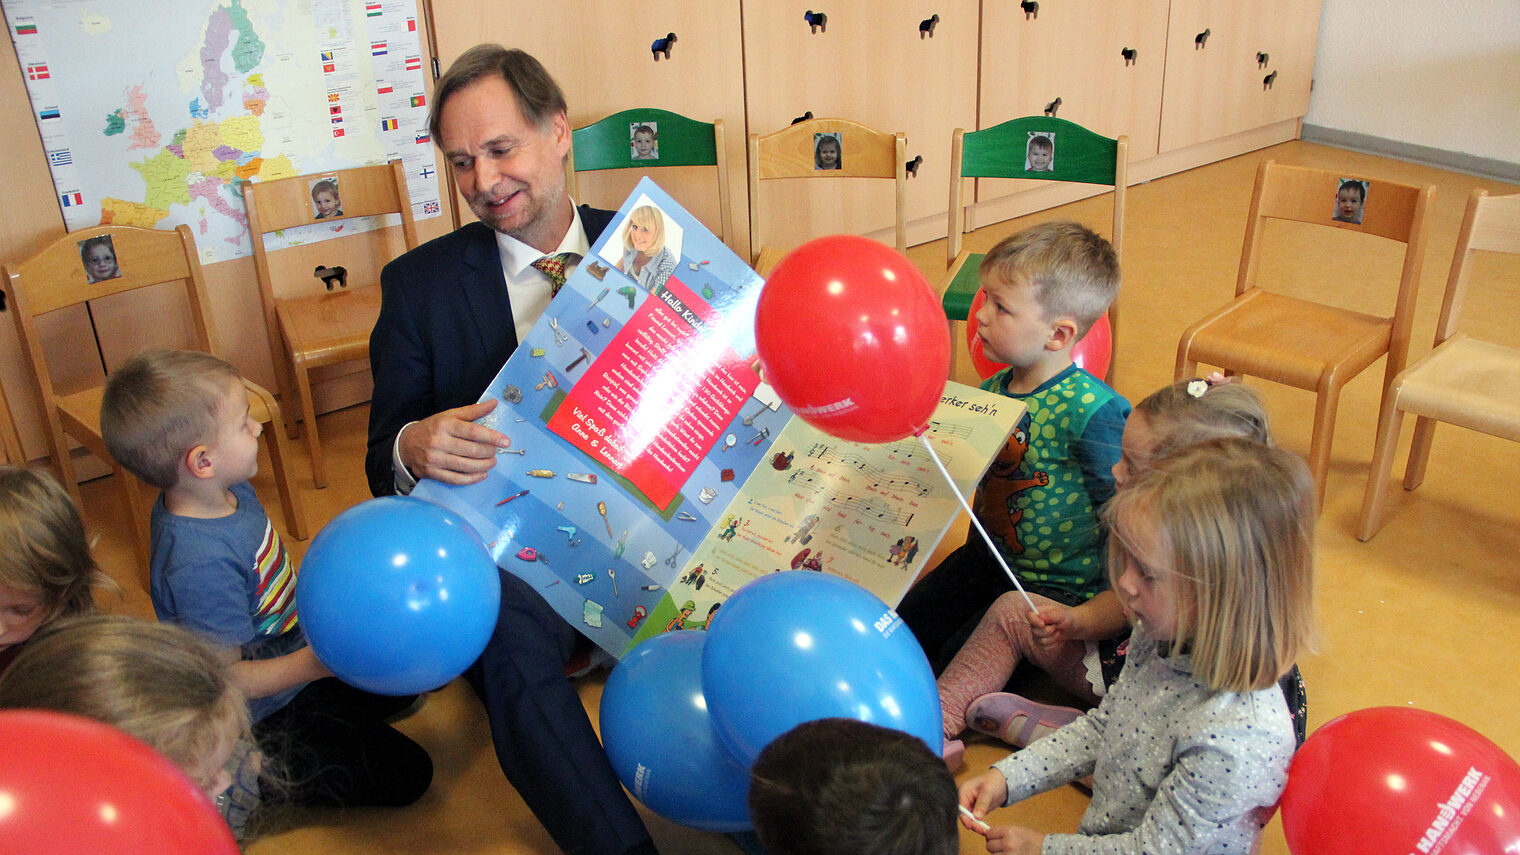 Handwerkskammer-Präsident Stefan Lobenstein singt mit den Kindern das Handwerker-Lied 